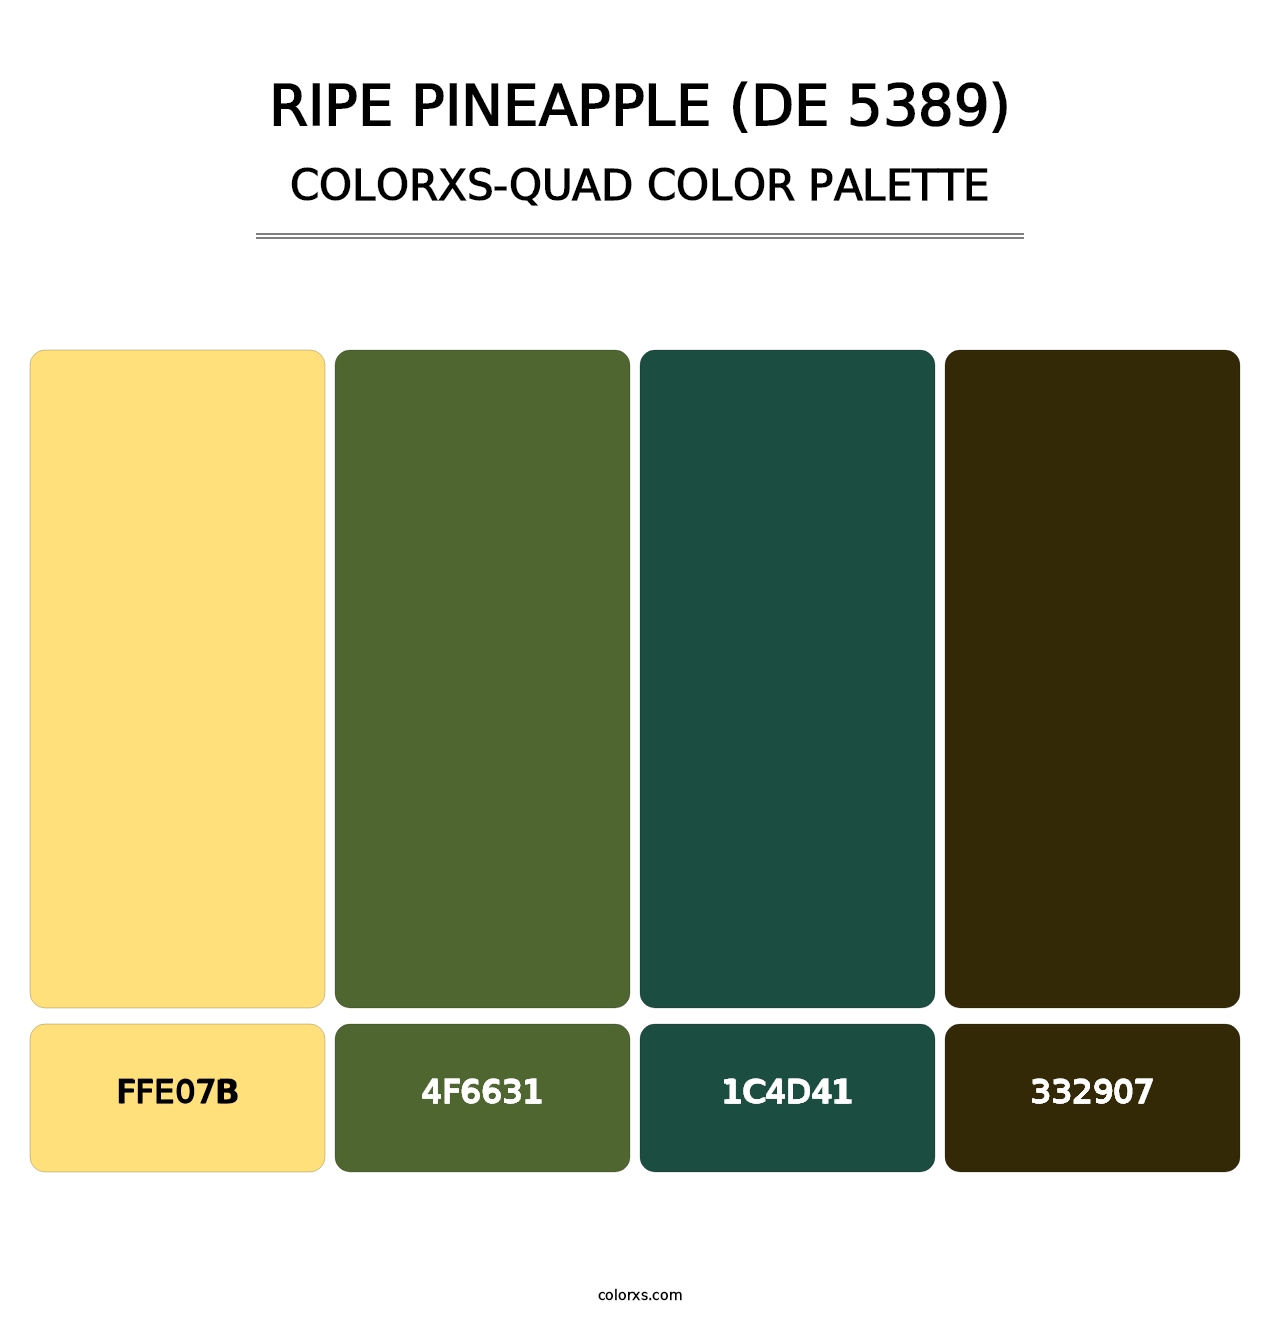 Ripe Pineapple (DE 5389) - Colorxs Quad Palette